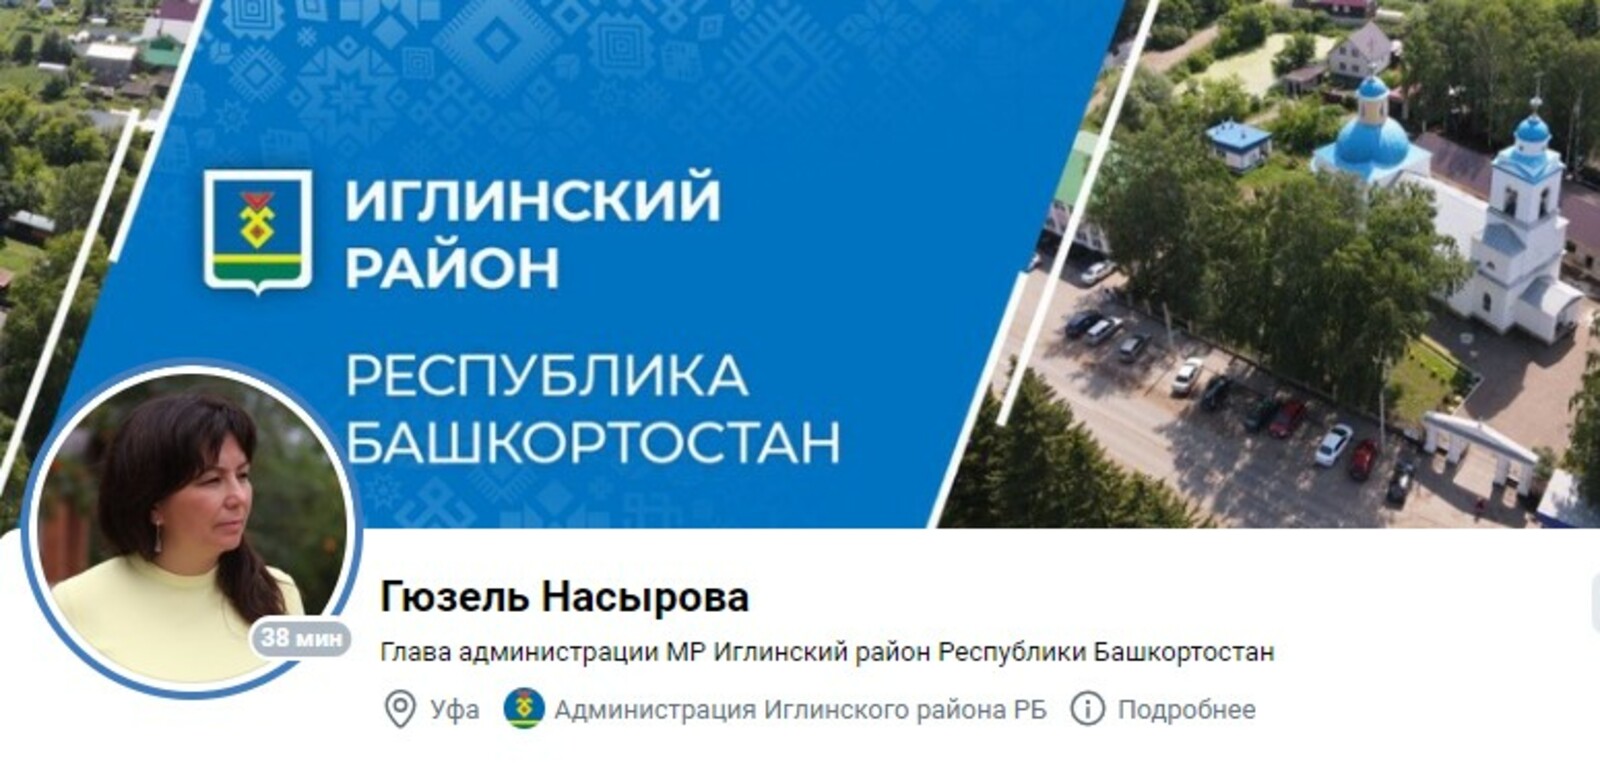 В Башкортостане страницы в соцсетях ведут 100% глав городов и районов